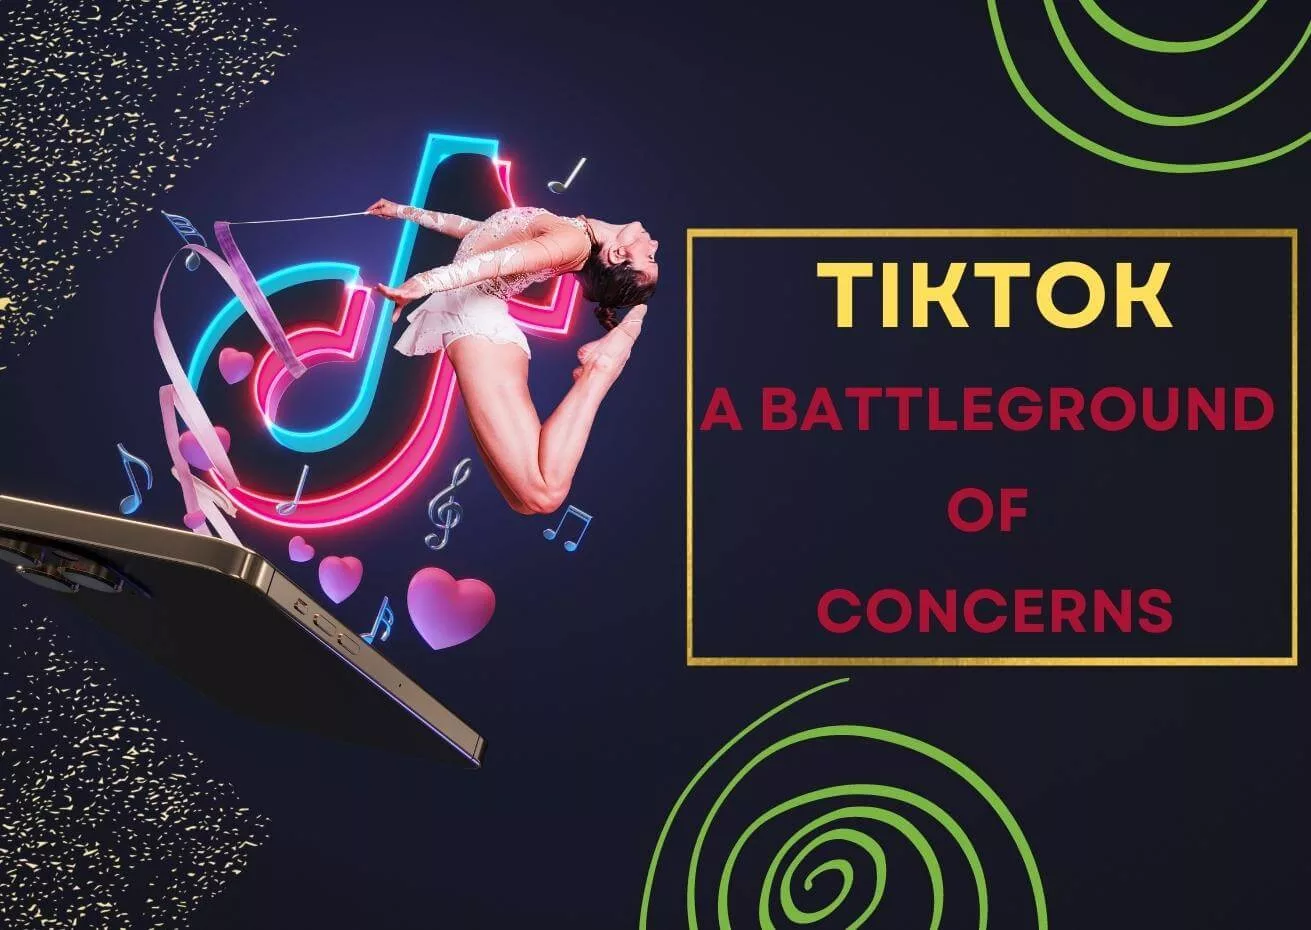 TikTok: A Battleground of Concerns